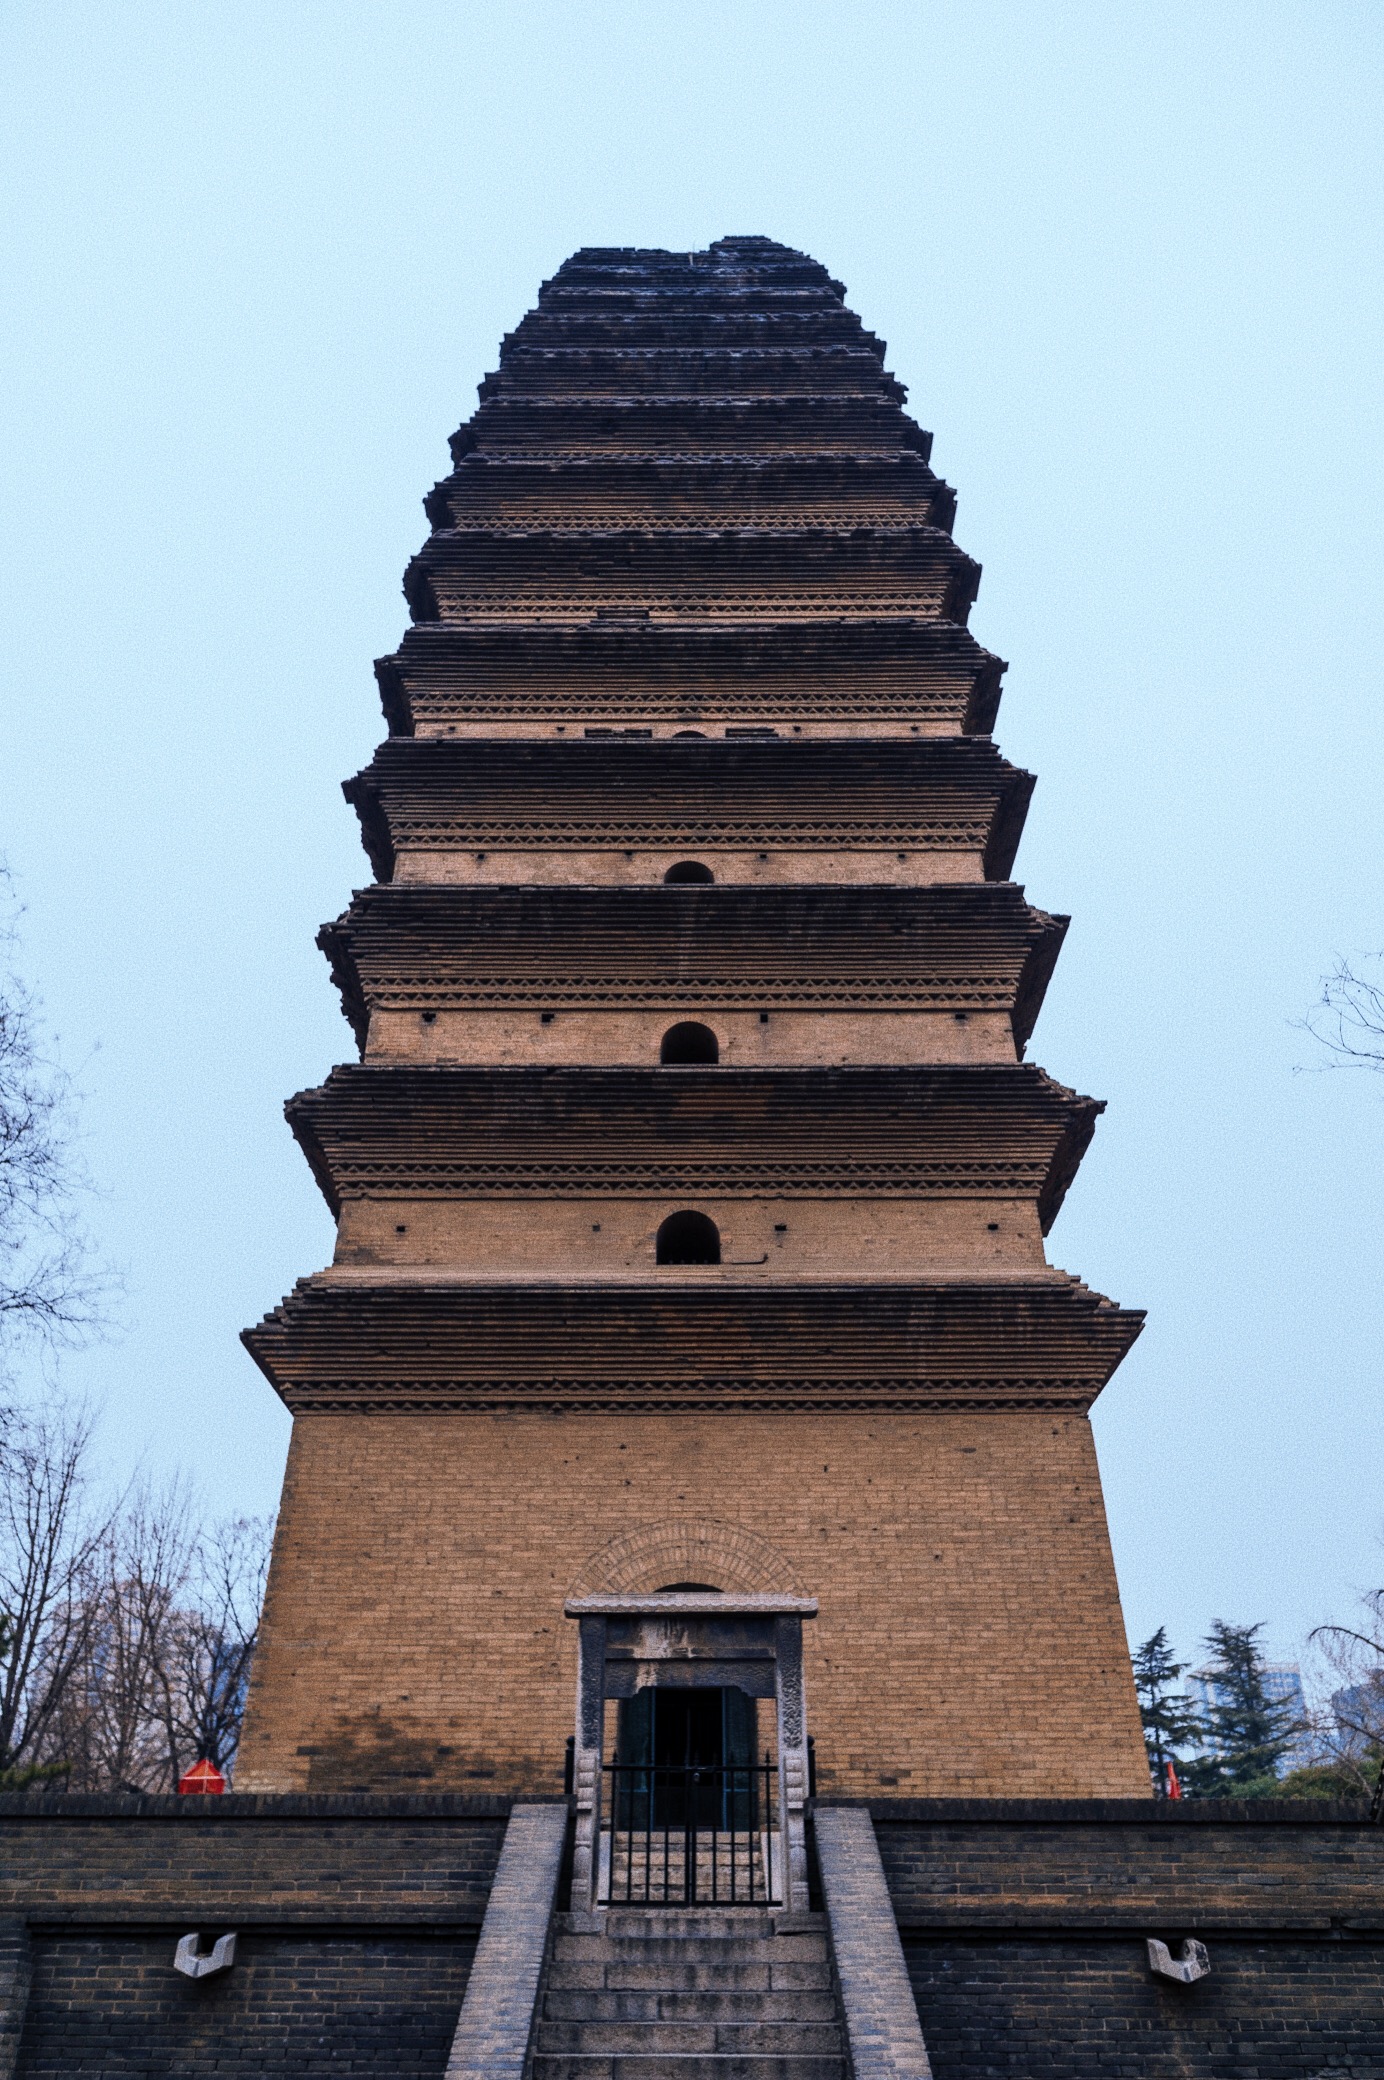 西安最“神奇”的佛塔，塔高40多米，屹立1300多年不倒堪称奇迹